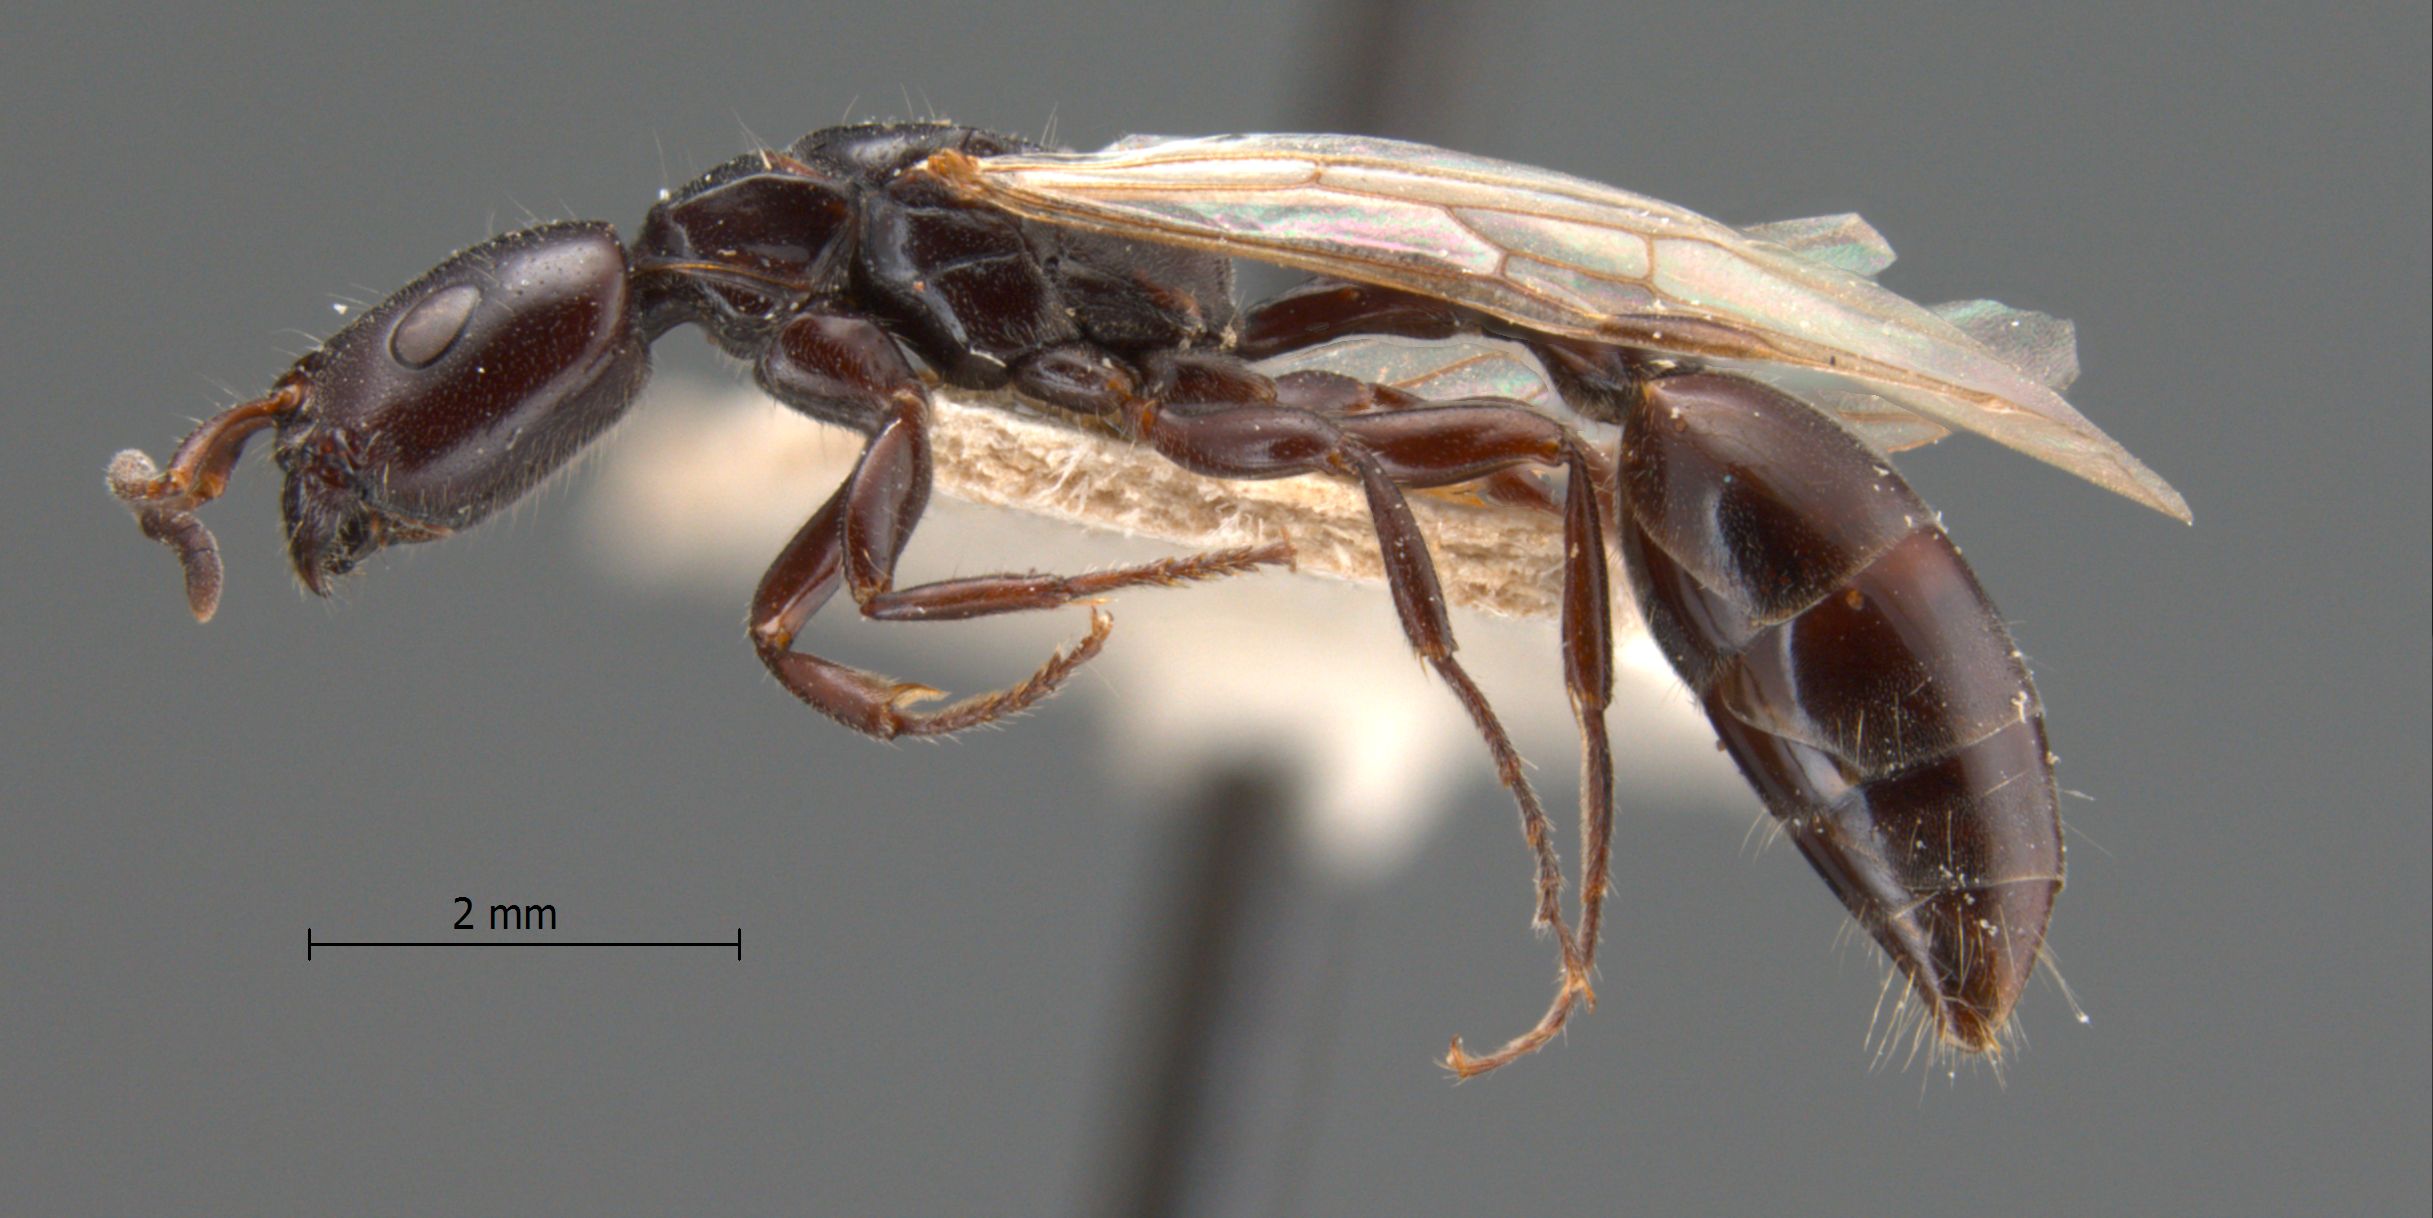 Tetraponera nigra queen lateral